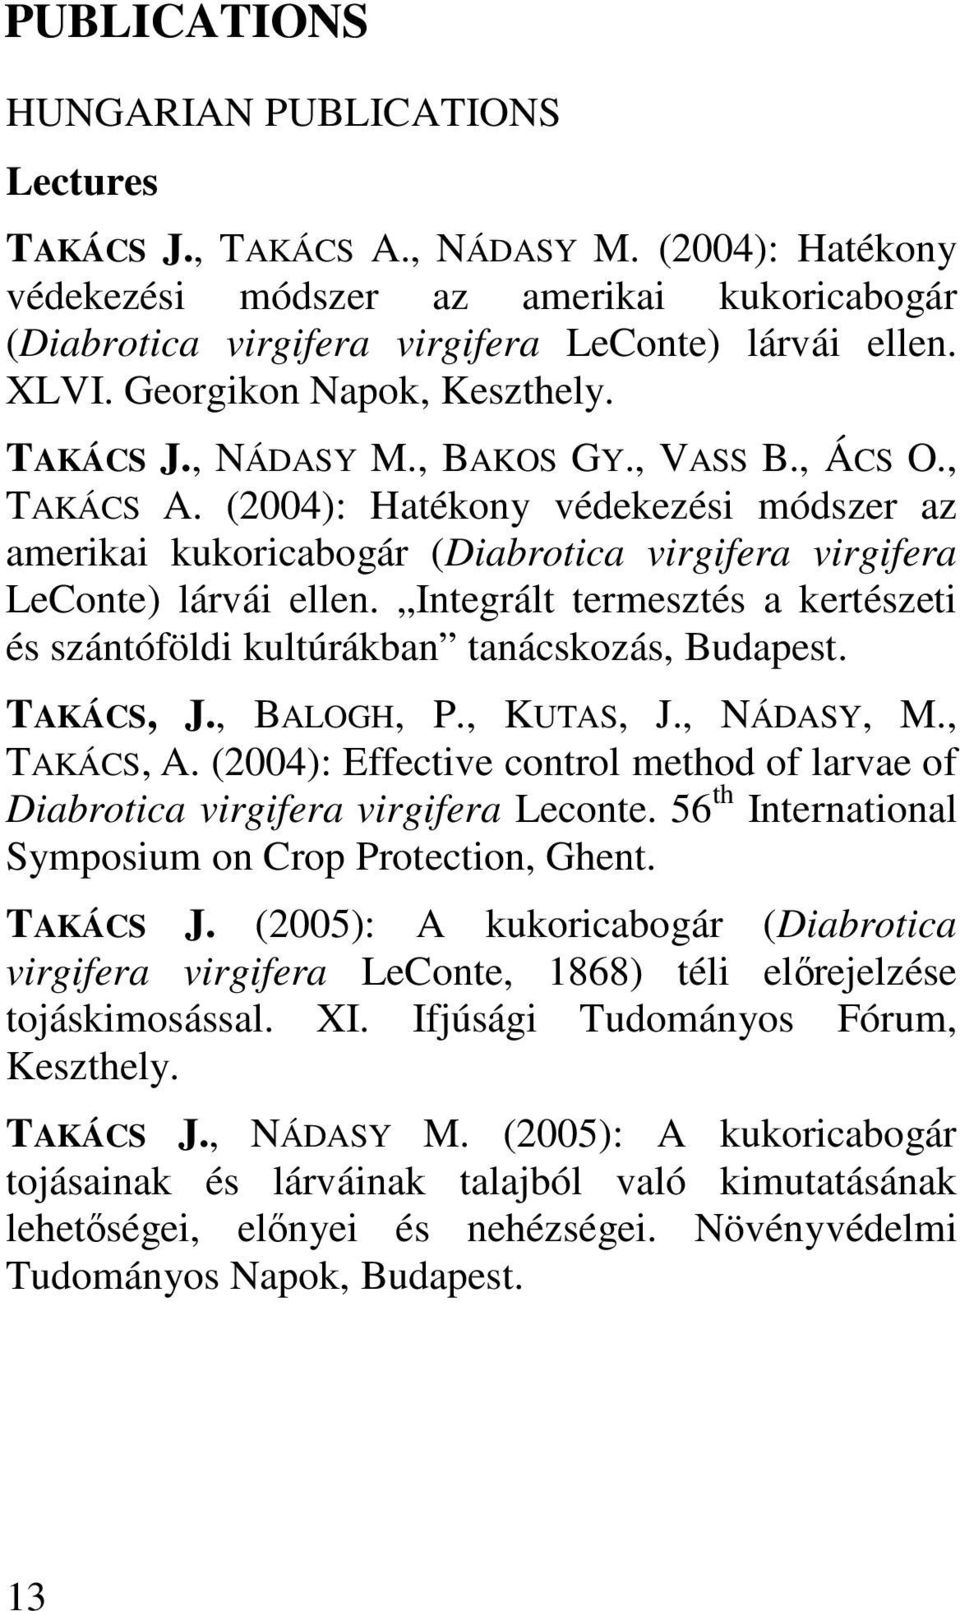 (2004): Hatékony védekezési módszer az amerikai kukoricabogár (Diabrotica virgifera virgifera LeConte) lárvái ellen. Integrált termesztés a kertészeti és szántóföldi kultúrákban tanácskozás, Budapest.